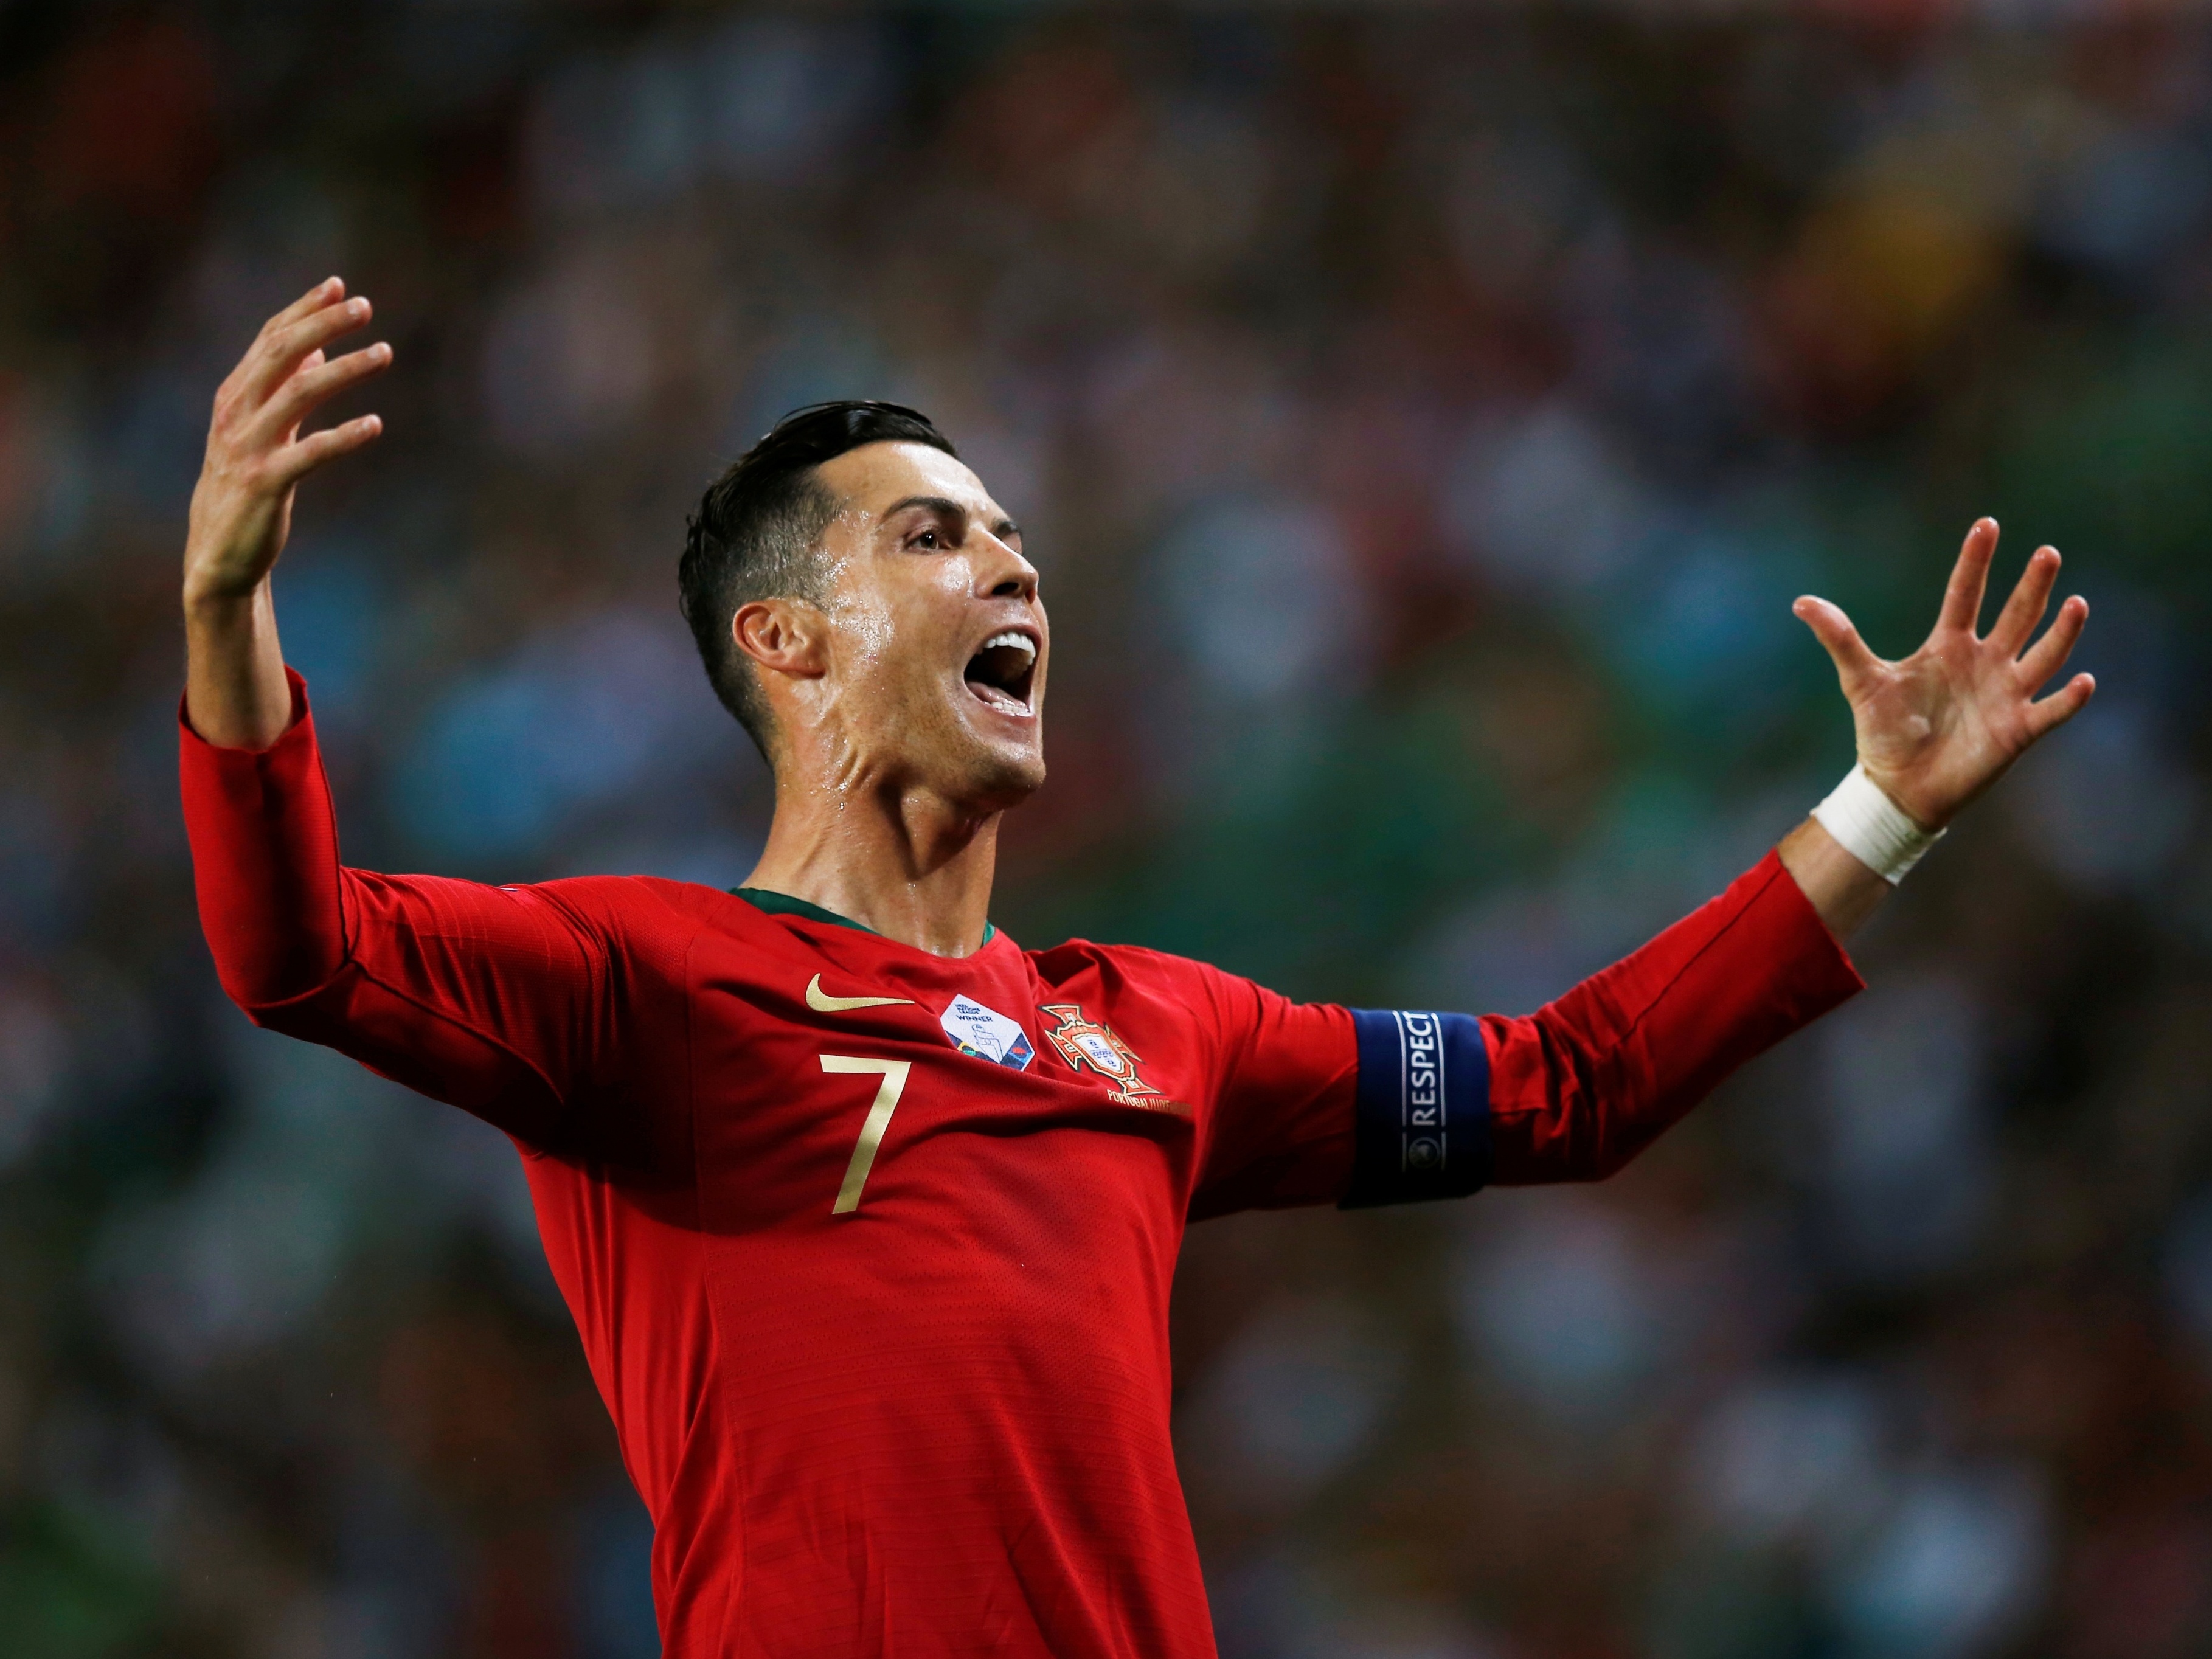 Com um gol por ano, C. Ronaldo pode deixar legado sem Copa